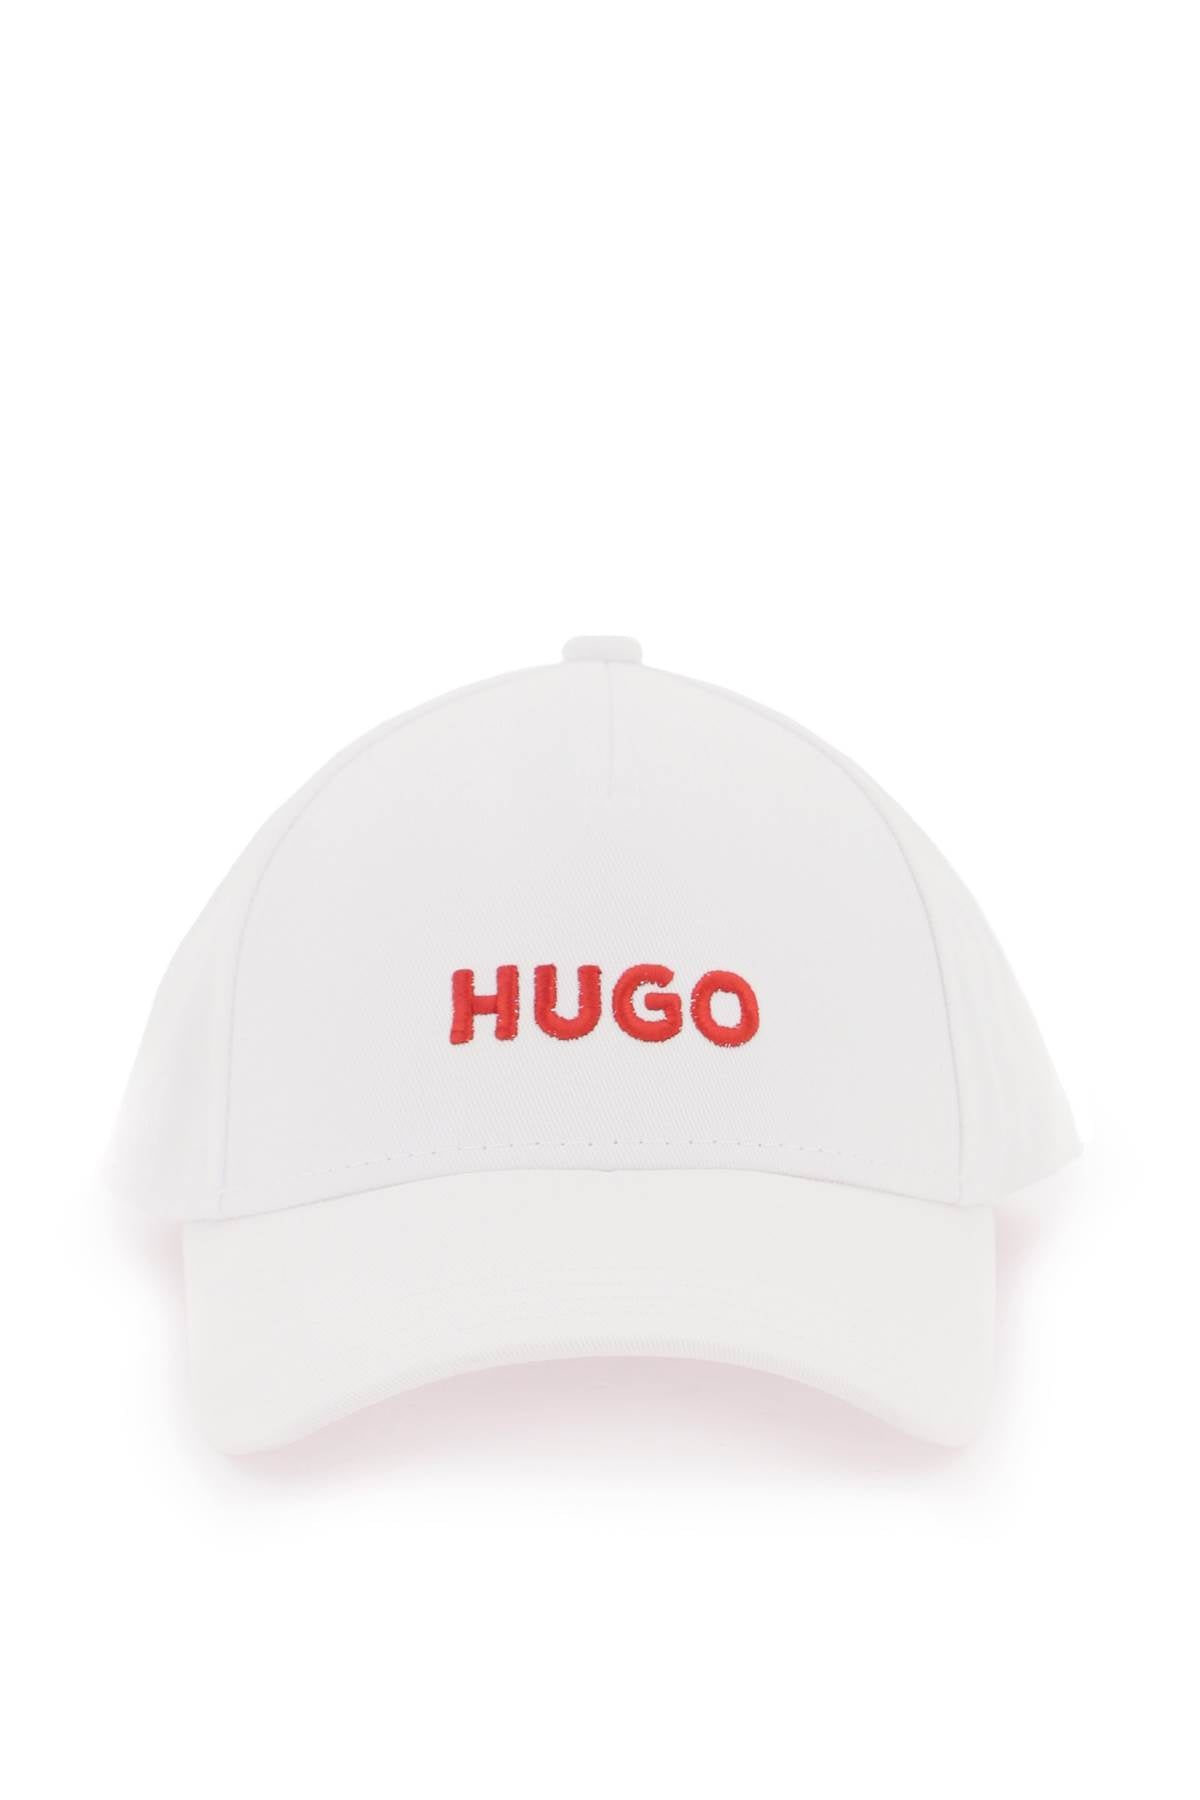 Hugo 刺繡標誌棒球帽 50496033 白色